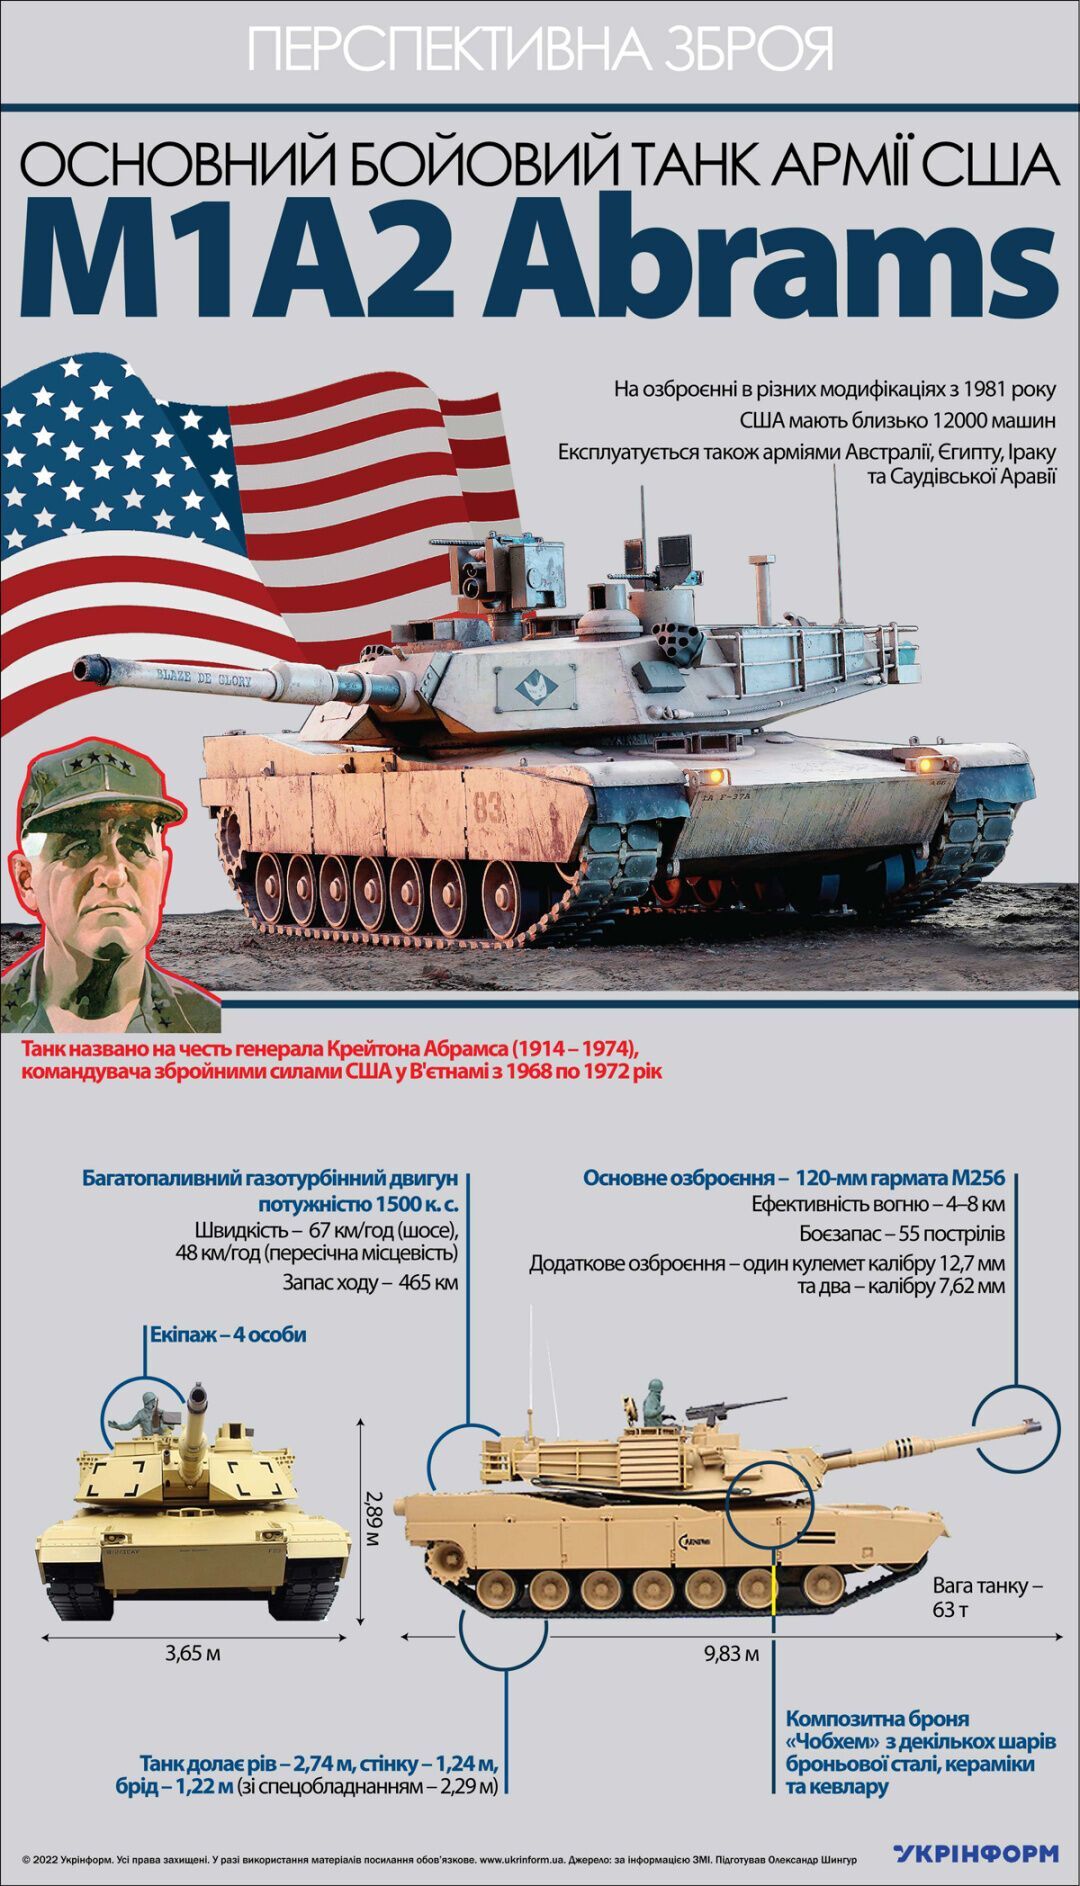 Танки Abrams від США: чим особливі та чому їх не передають ЗСУ - пояснення від Пентагону